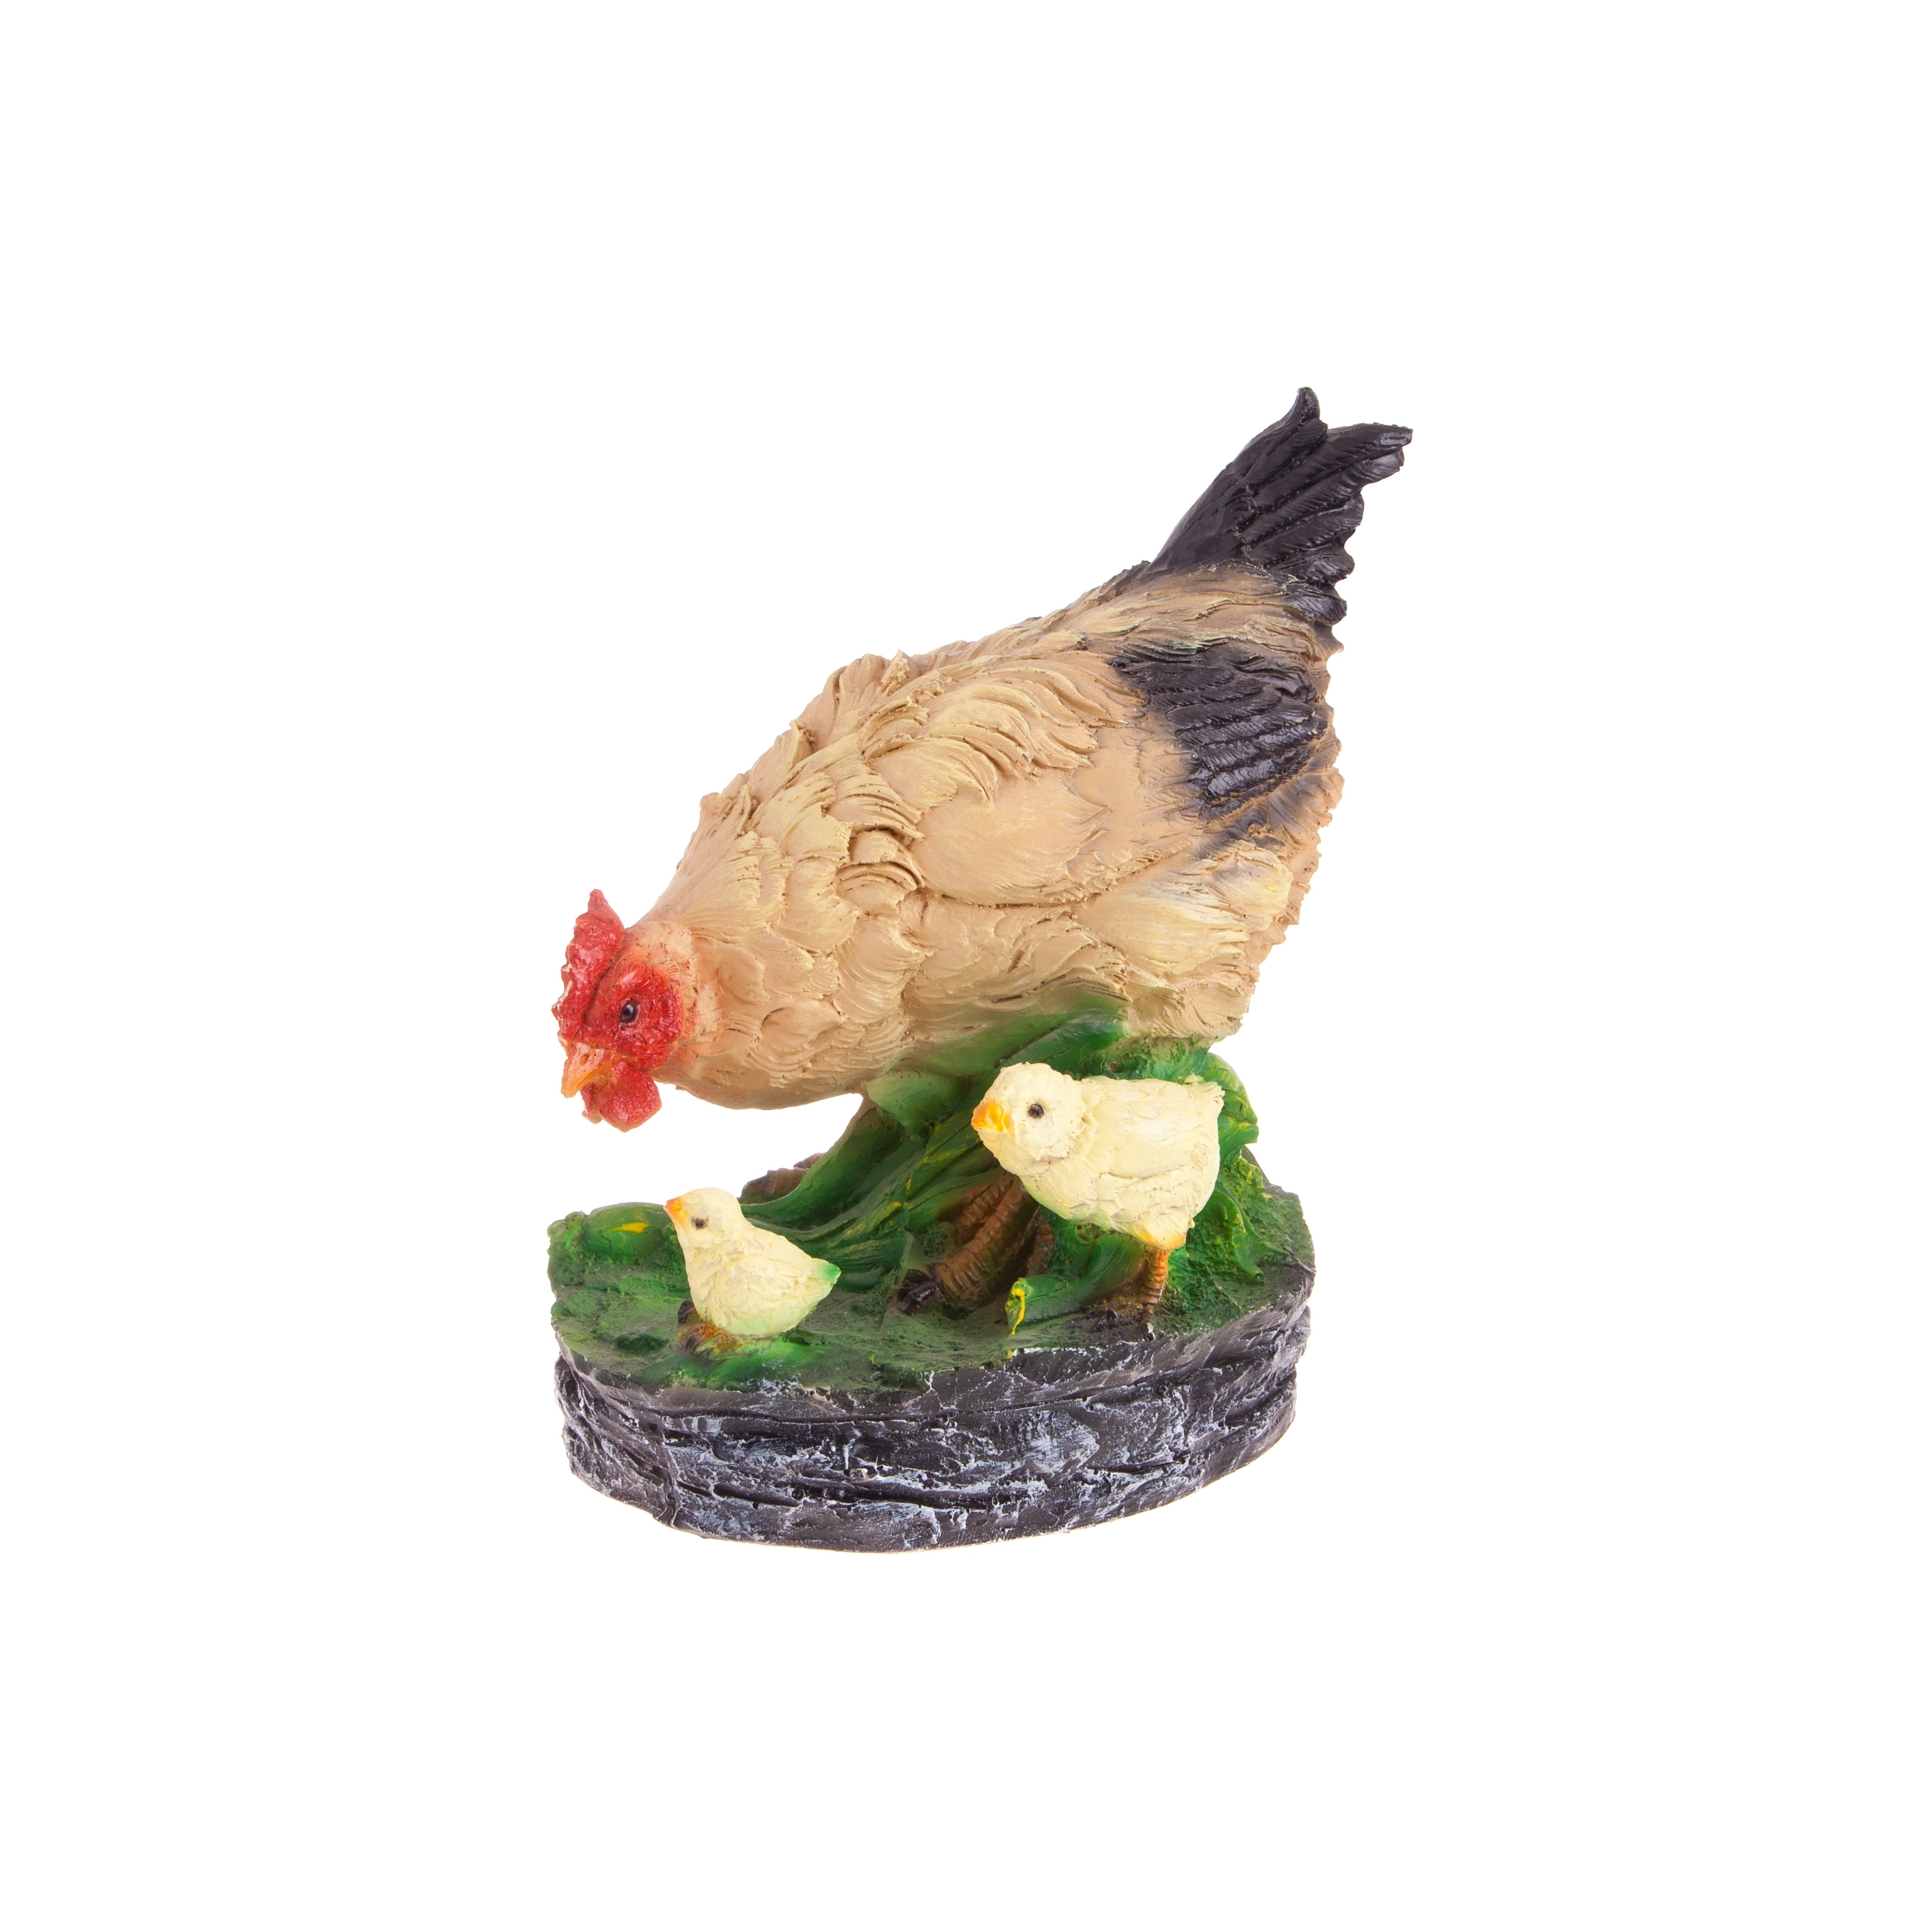 Фигура садовая Курица с цыплятами 23 см (F138) садовая фигура курица мал с цыплятами h 23см f138